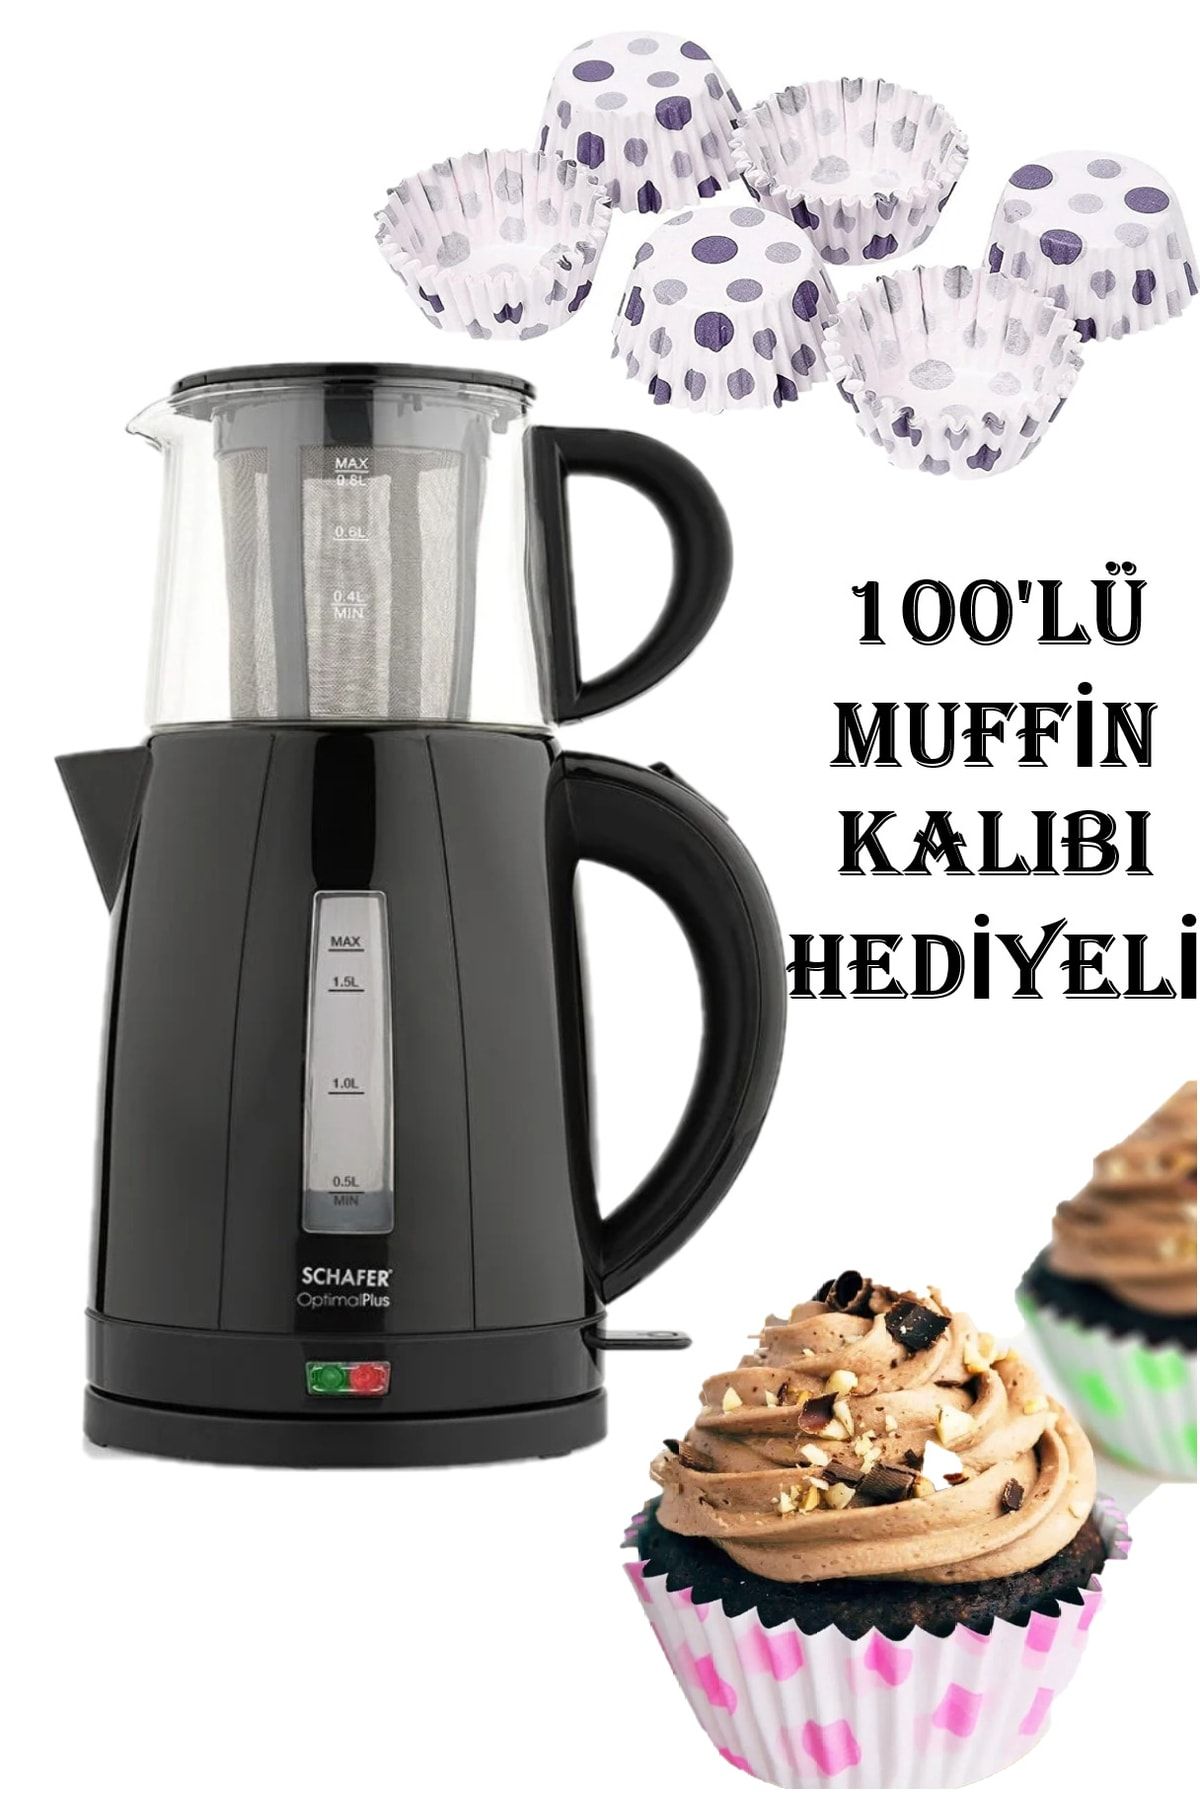 Schafer Hediyeli Siyah Optimal Plus Elektrikli Çay Makinesi 100lü Muffin Kalıbı Anneler Günü Özel